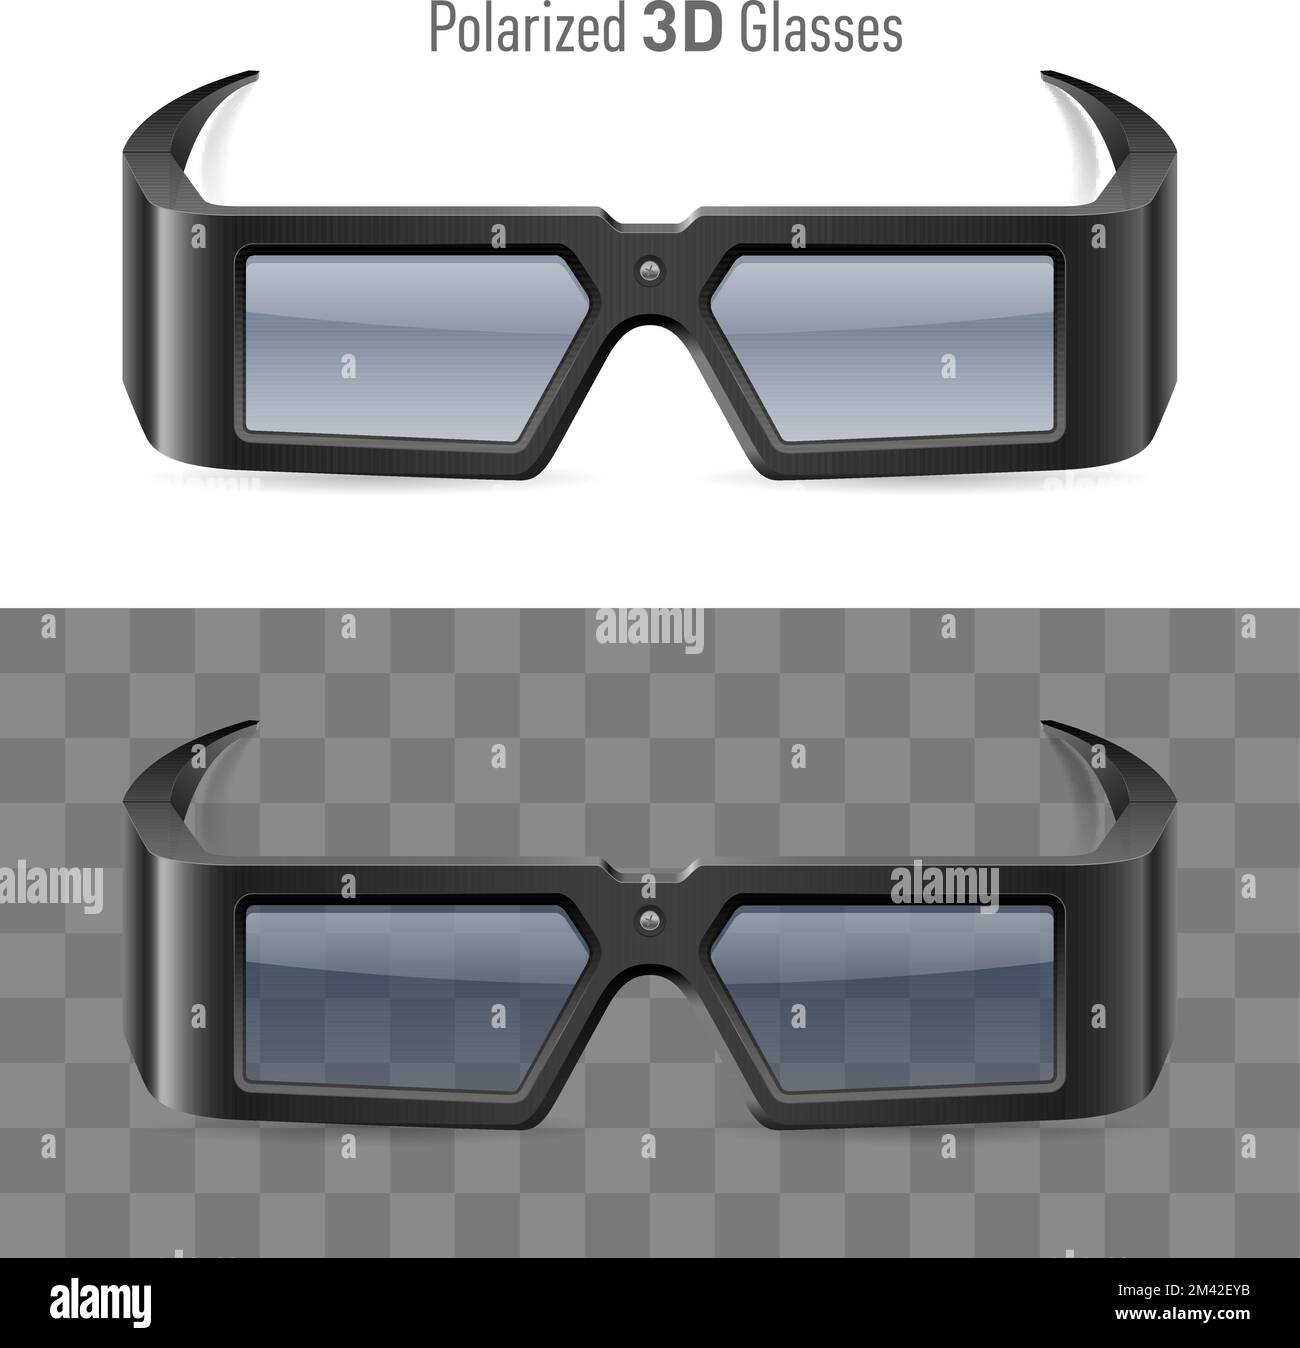 Ilustración de las gafas de cine 3D polarizadas sobre fondo blanco y  transparente. Elemento de diseño de accesorios para ver películas Imagen  Vector de stock - Alamy